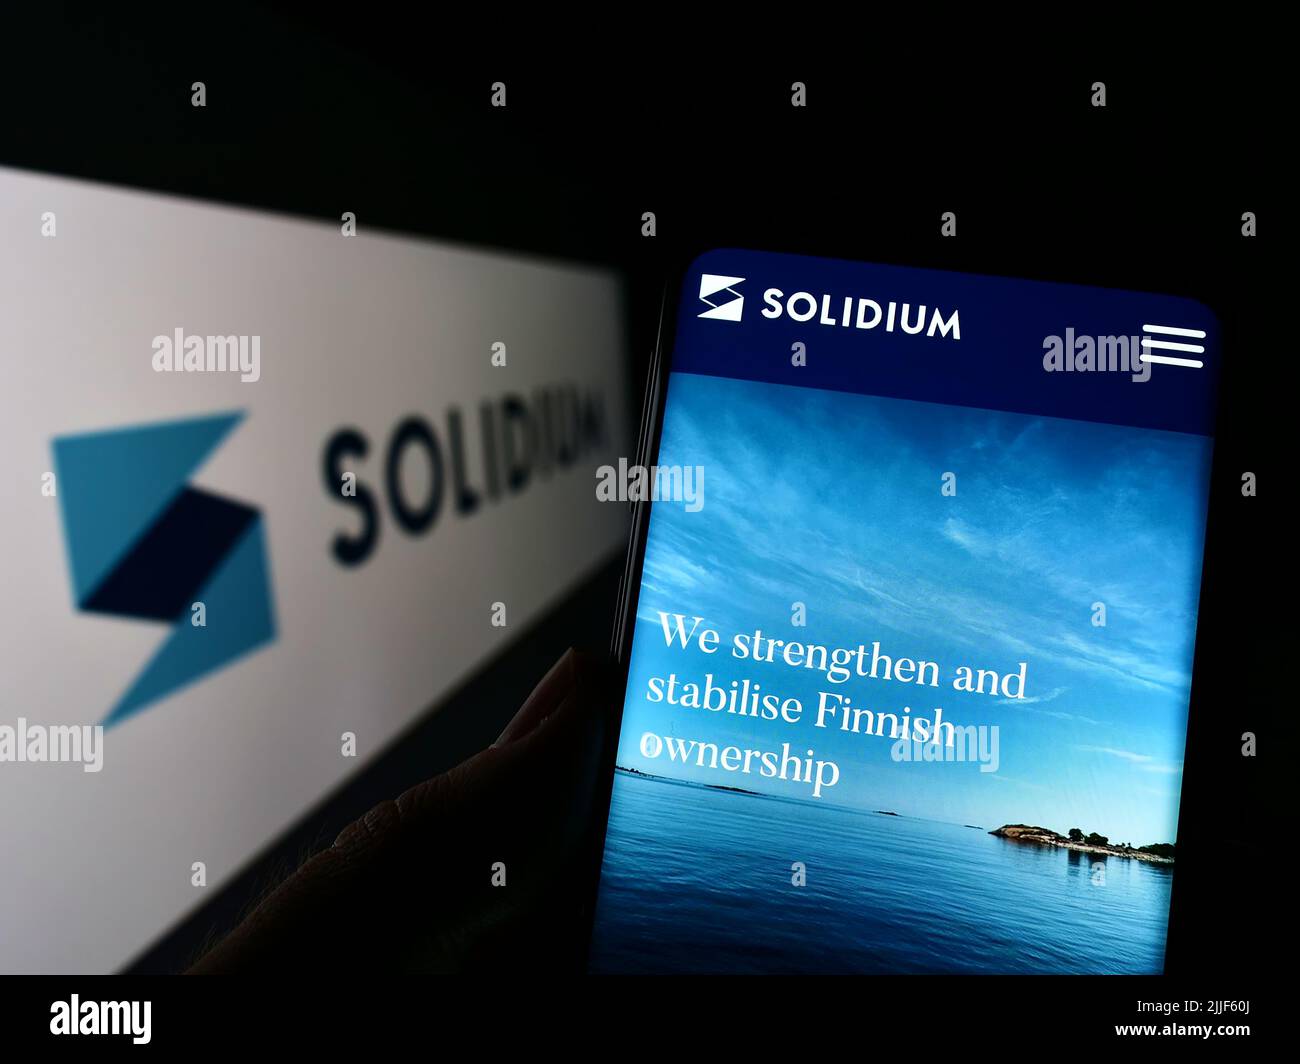 Persona que sostiene el teléfono móvil con la página web de la empresa de inversión finlandesa Solidium Oy en la pantalla delante del logotipo. Enfoque en el centro de la pantalla del teléfono. Foto de stock